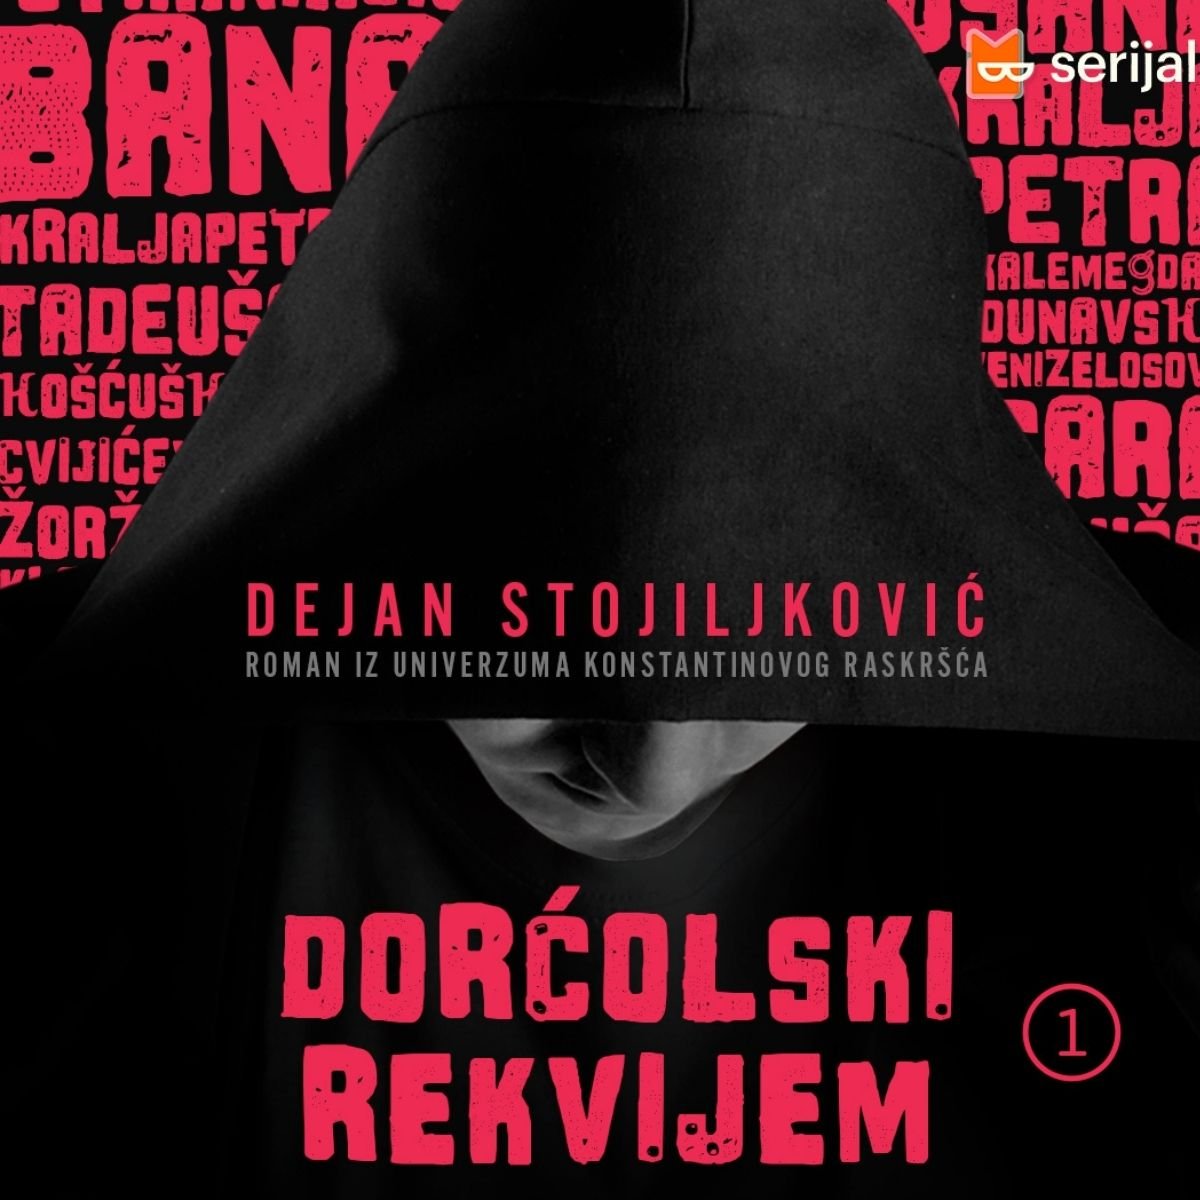 Naslovna strana novog romana Dejana Stojiljkovića Dorćolski rekvijem / foto: Bookmate